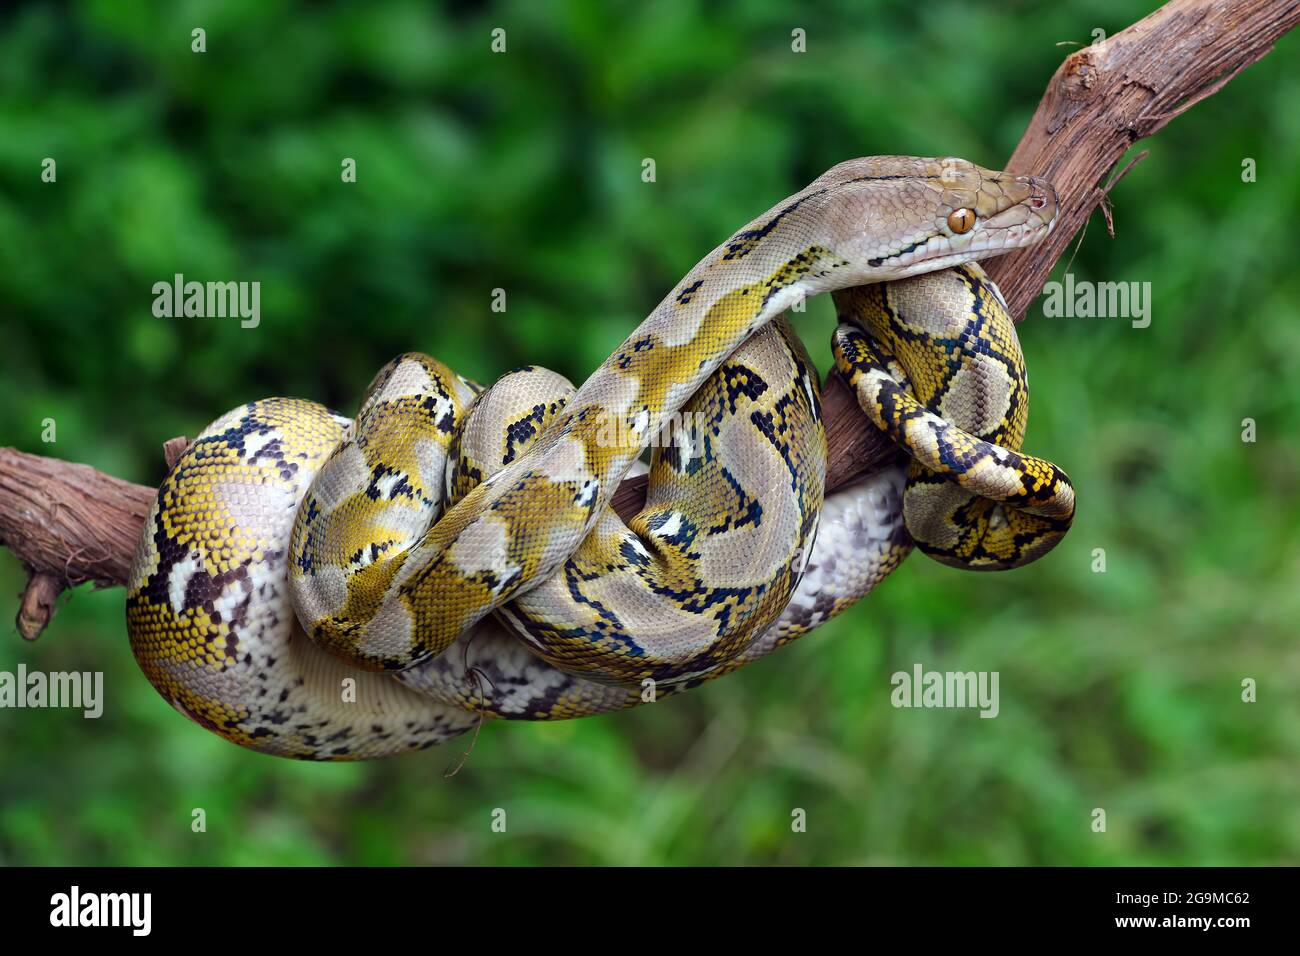 Les serpents Python habitent dans des troncs d'arbre Banque D'Images